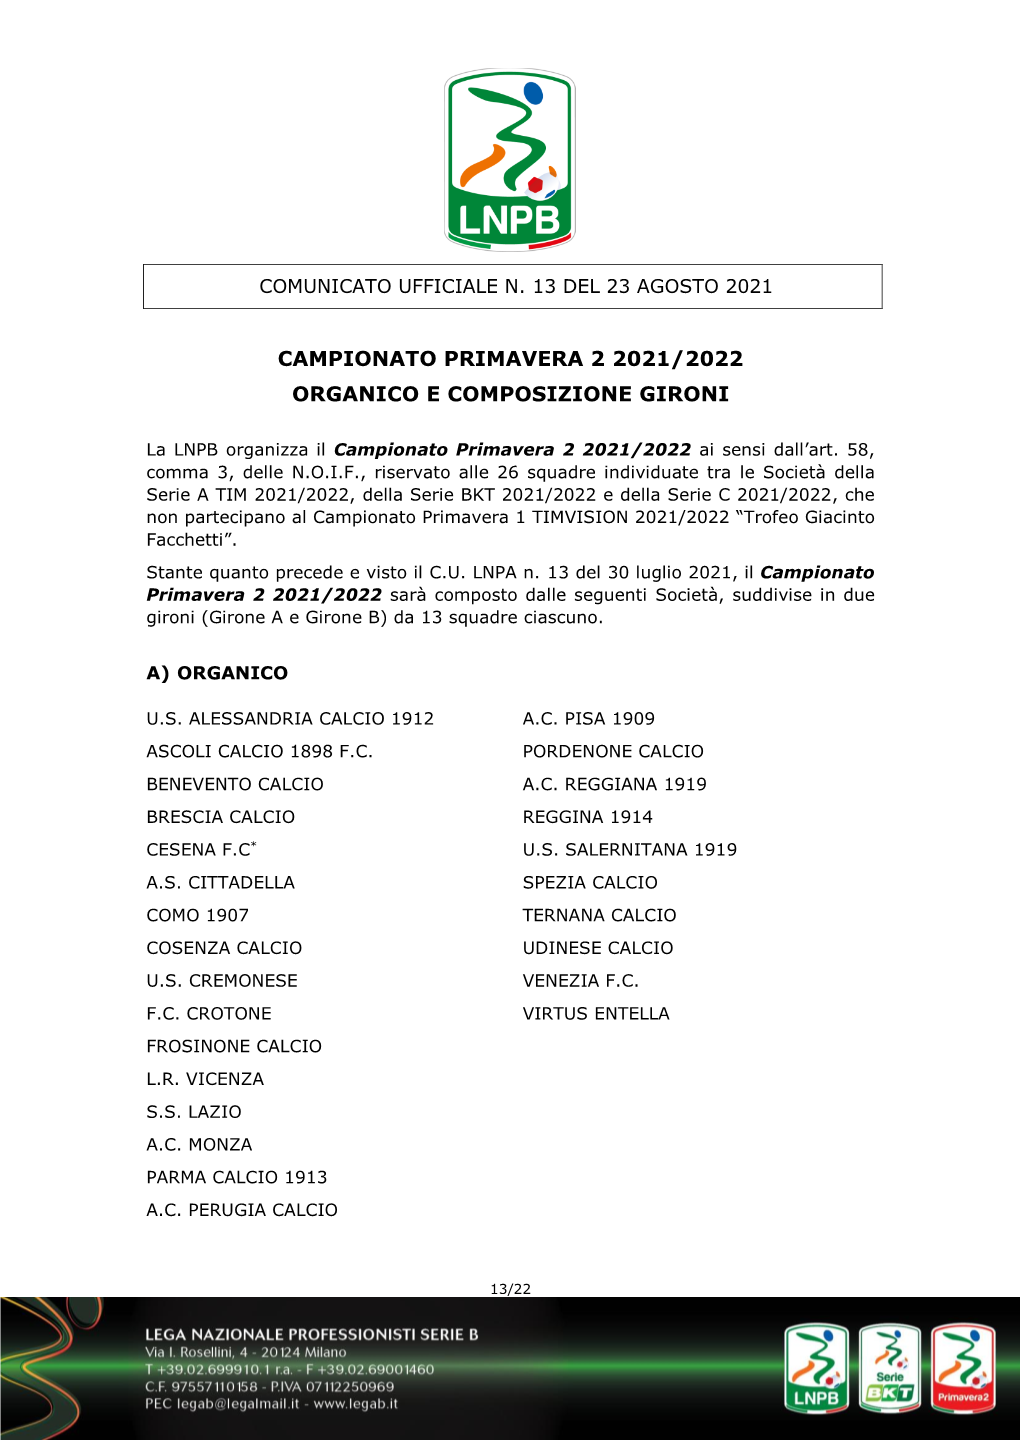 Organico E Composizione Gironi Campionato Primavera 2 2021-2022